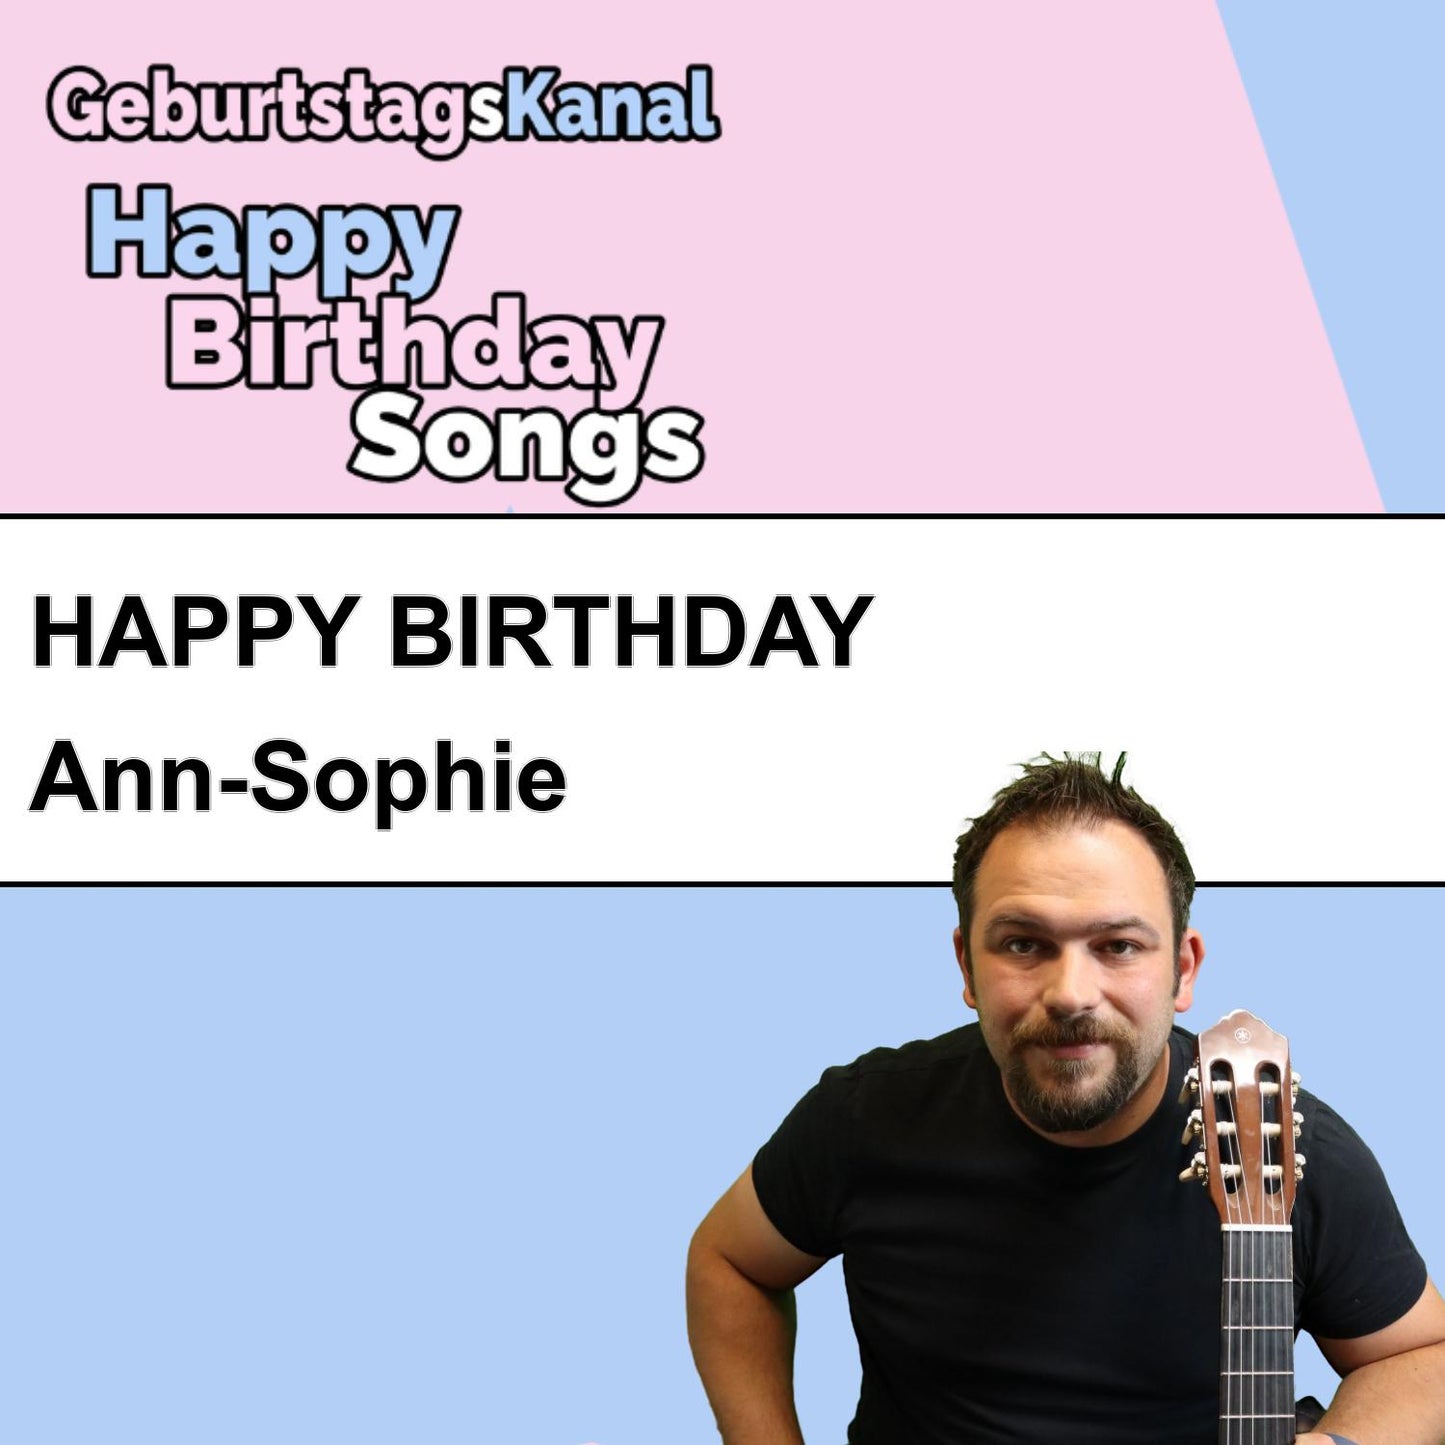 Produktbild Happy Birthday to you Ann-Sophie mit Wunschgrußbotschaft